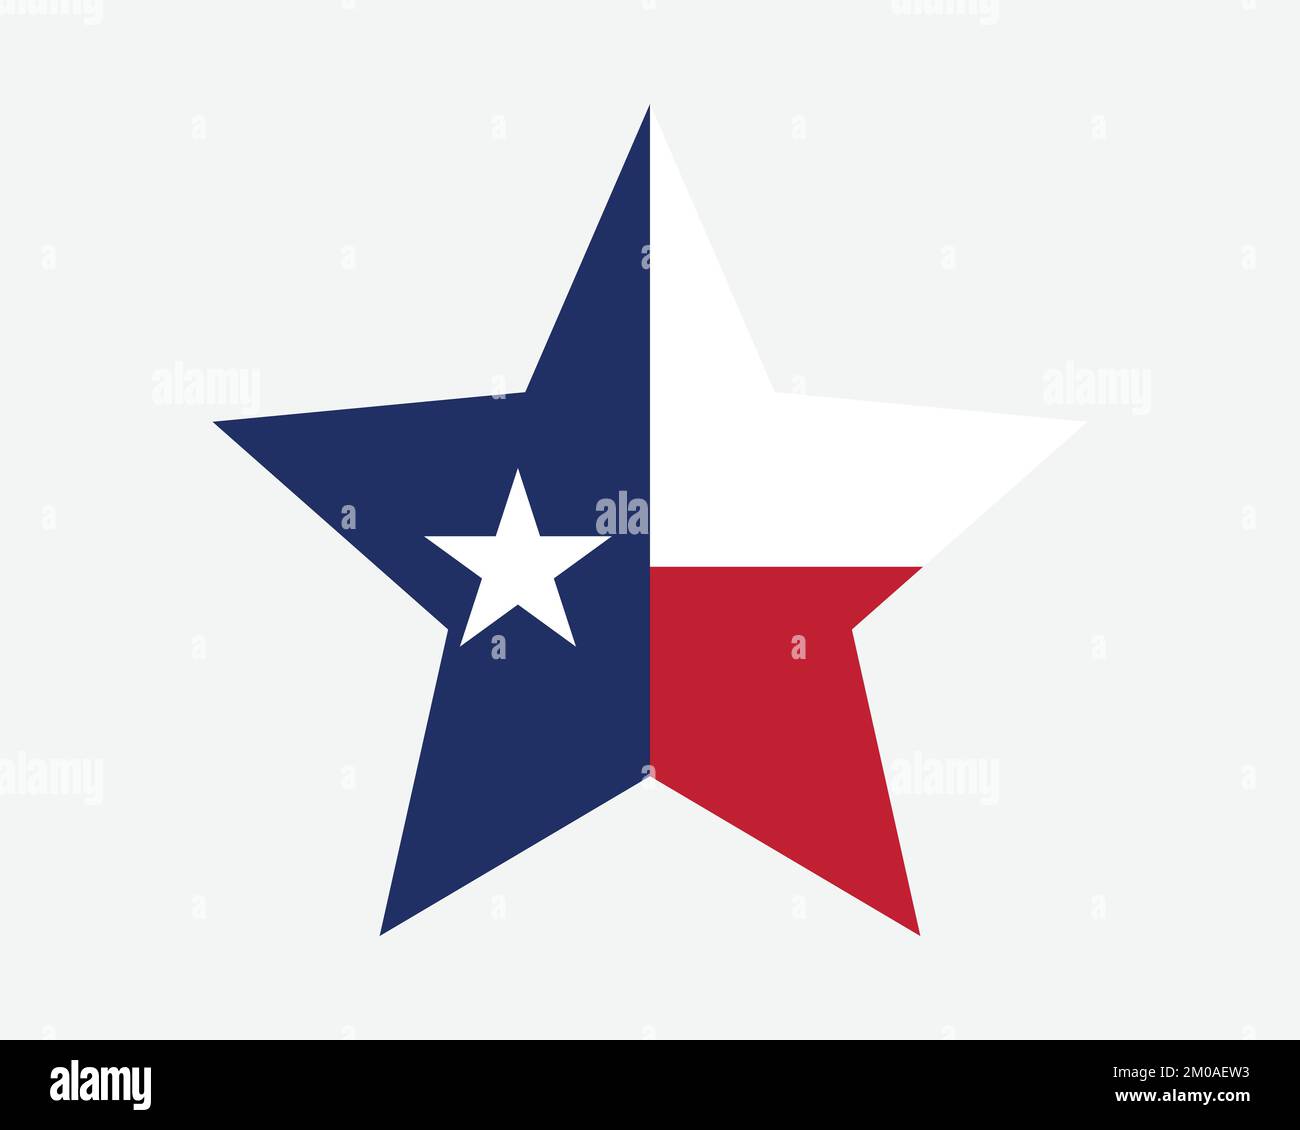 Drapeau étoile du Texas. Drapeau d'état en forme d'étoile à cinq points TX USA. Icône de bannière Texan US Lone Star symbole maquette vectorielle plate Illustration graphique Illustration de Vecteur